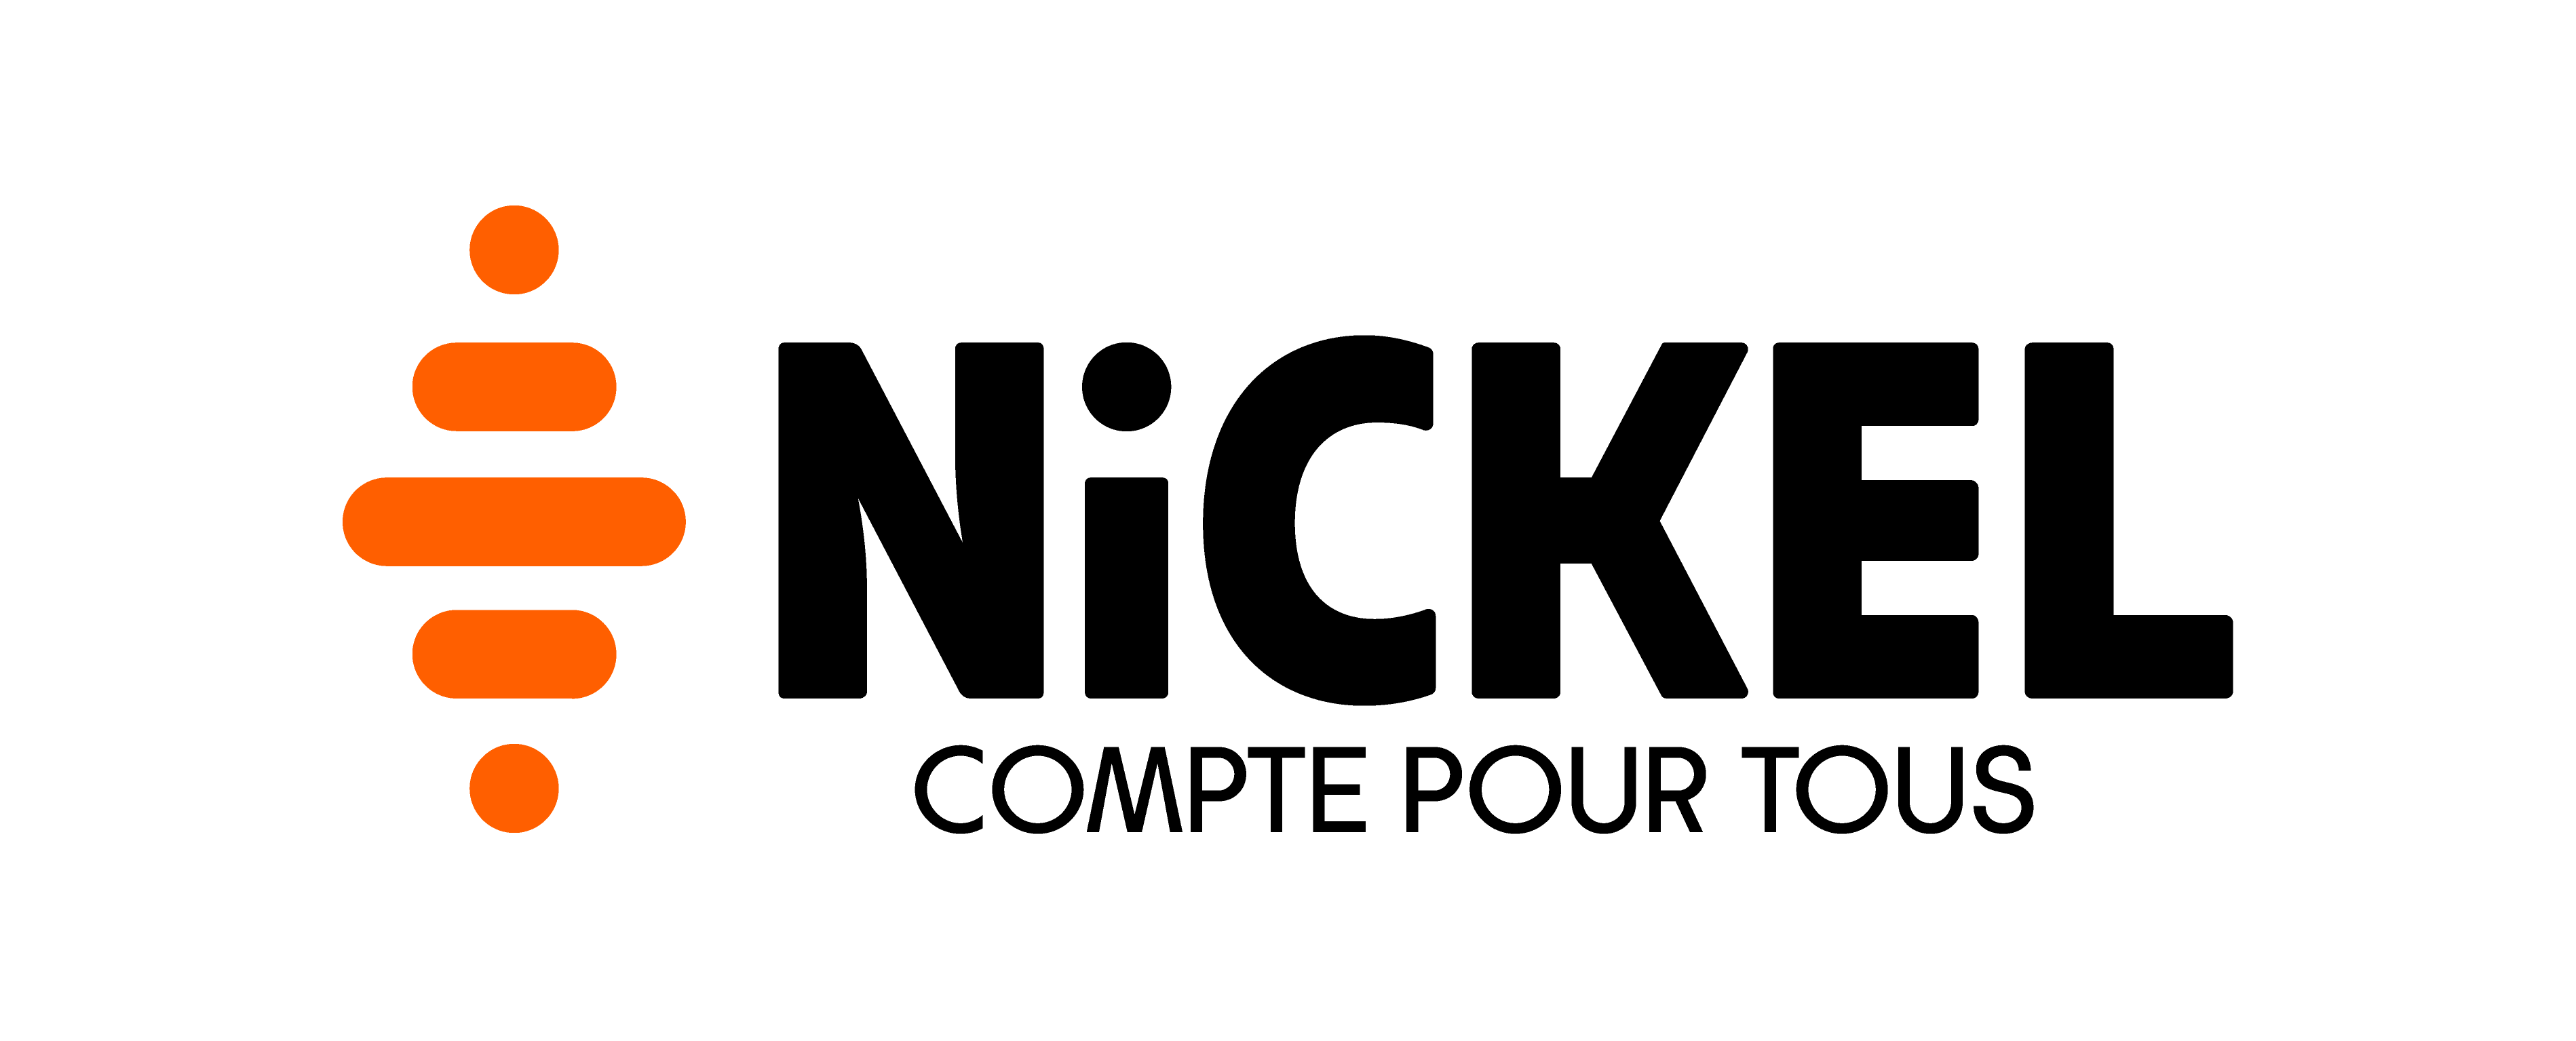 NICKEL dépasse les 30.000 clients à la Réunion et confirme sa place de leader